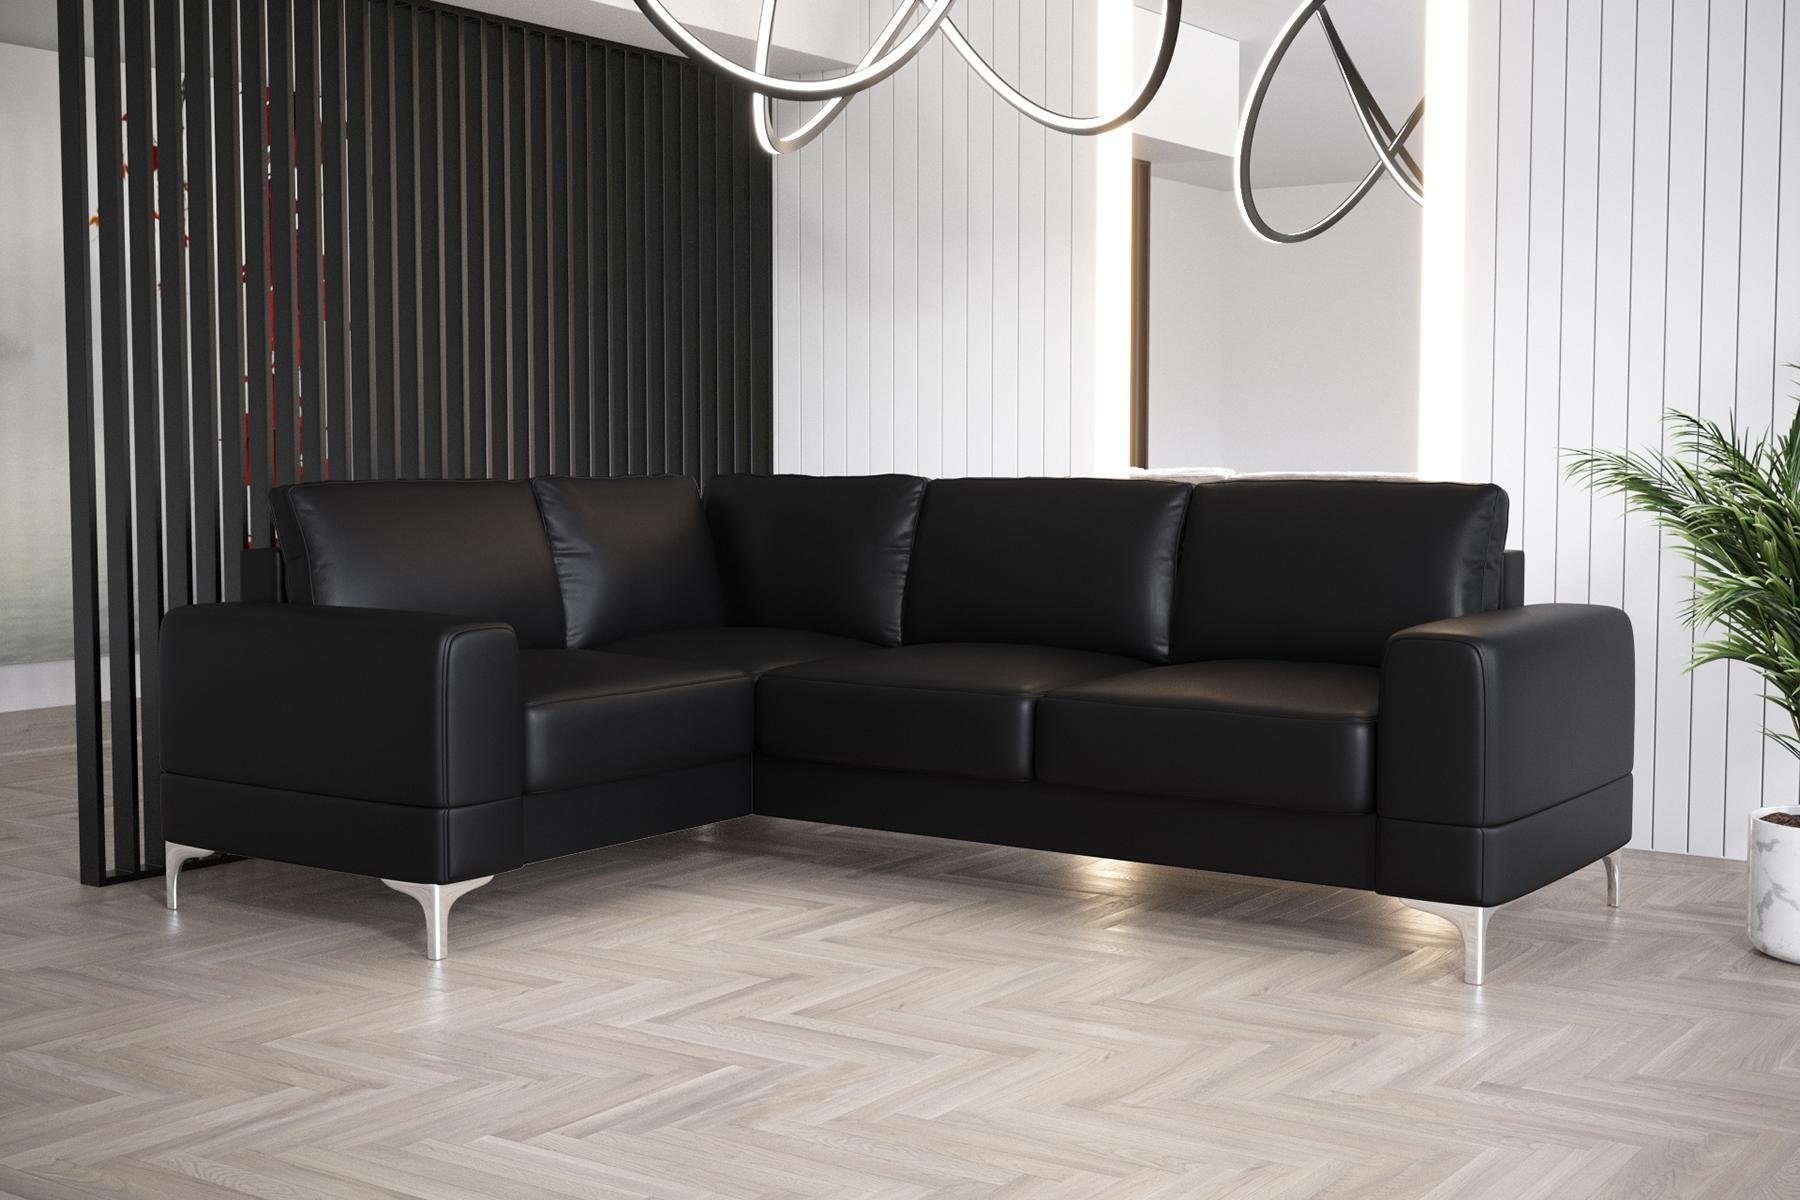 JVmoebel Ecksofa Wohnzimmer Sofa L-Form Möbel Modern Luxus Ecksofa Couch, Made in Europe Schwarz